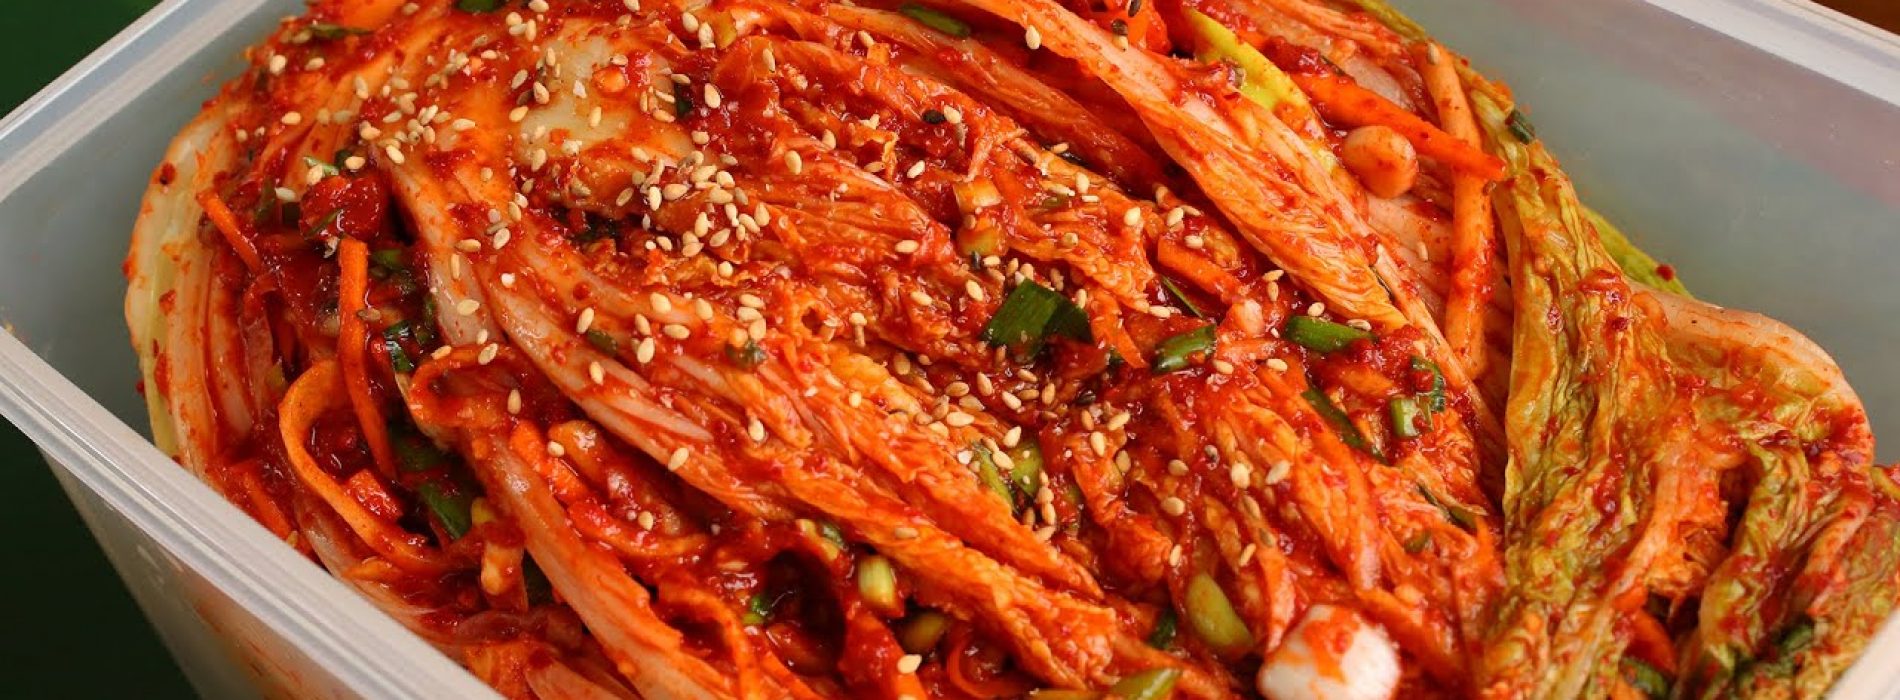 Nieuwe wetenschappelijke recensie prijst verbazingwekkende antivirale capaciteiten van kimchi